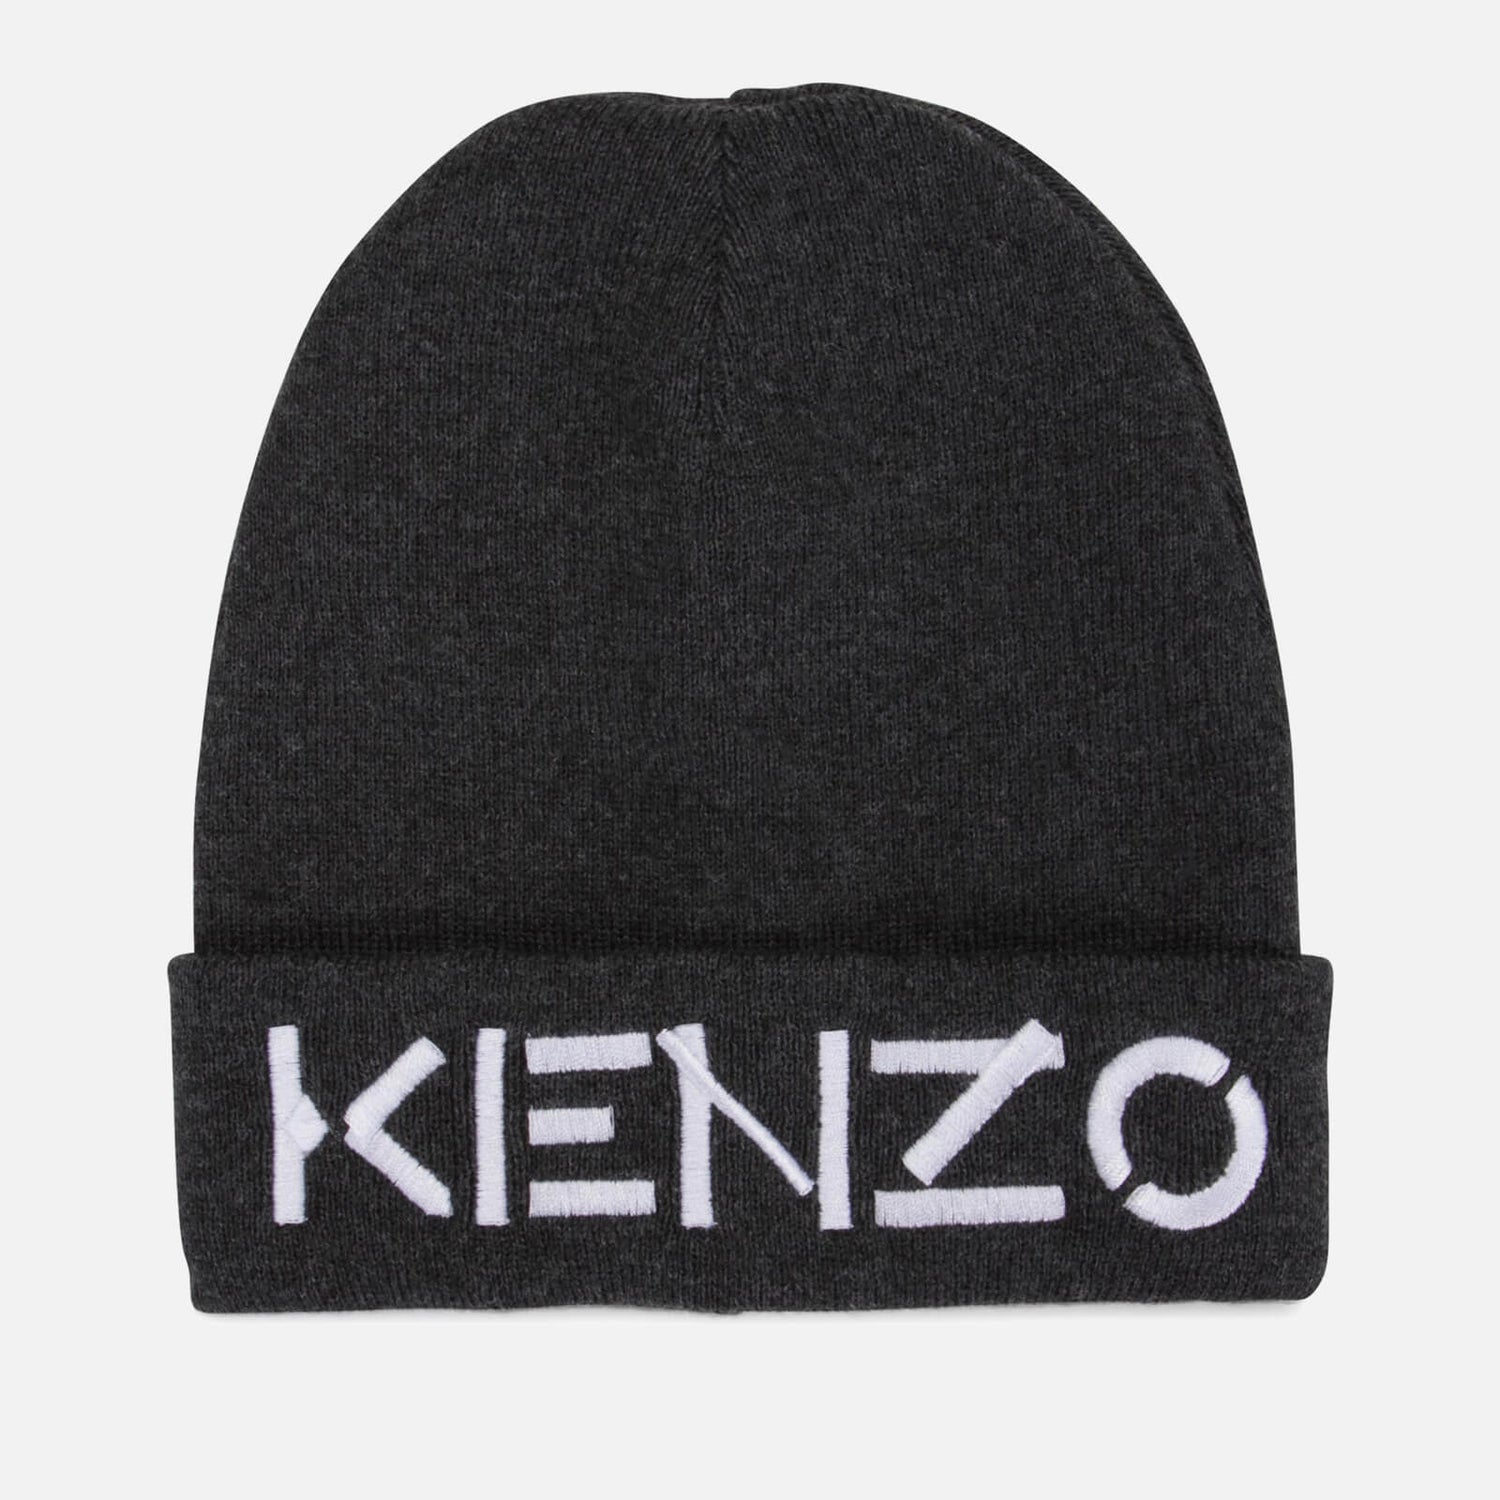 KENZO Boys' Knit Beanie Hat - Small